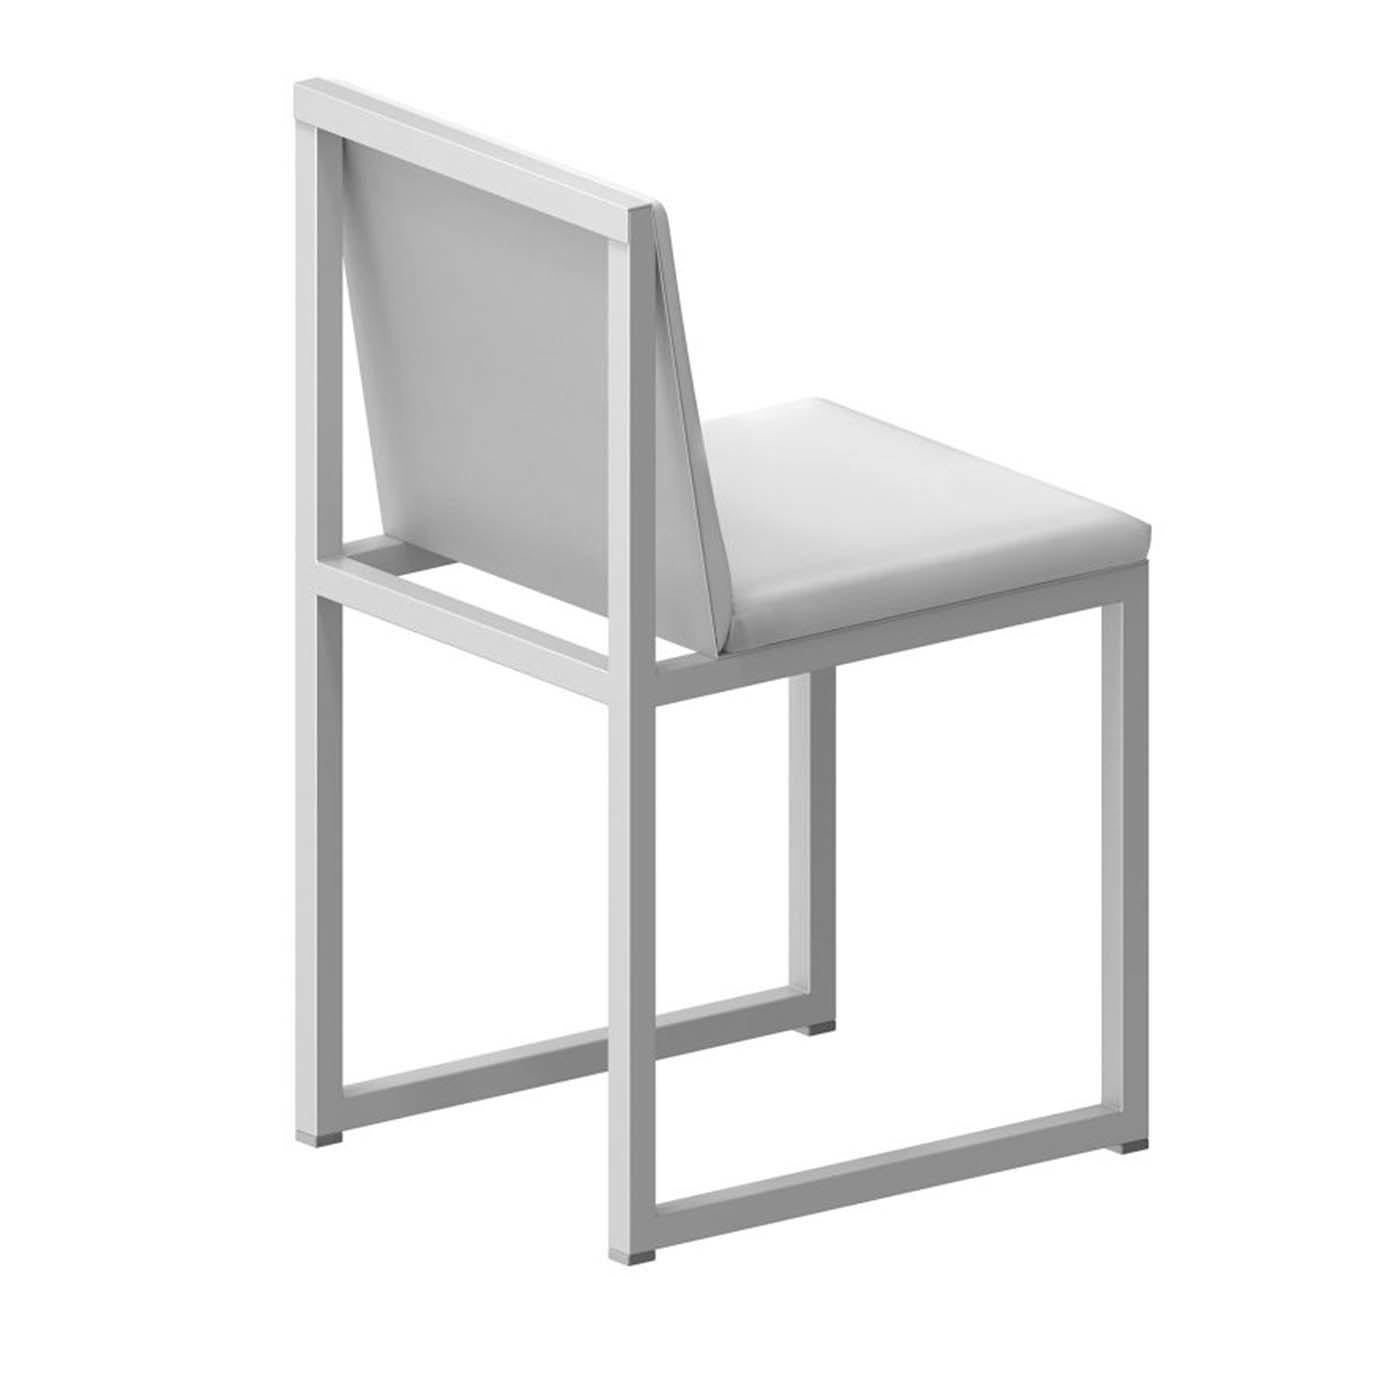 Dieser exklusive Stuhl, der sich sowohl für das tägliche Essen als auch für besondere Anlässe eignet, besteht aus einem geometrischen, offenen Gestell aus Vierkantstahlrohr (25 x 25 mm), das ihm ein minimalistisches und luftiges Aussehen verleiht.